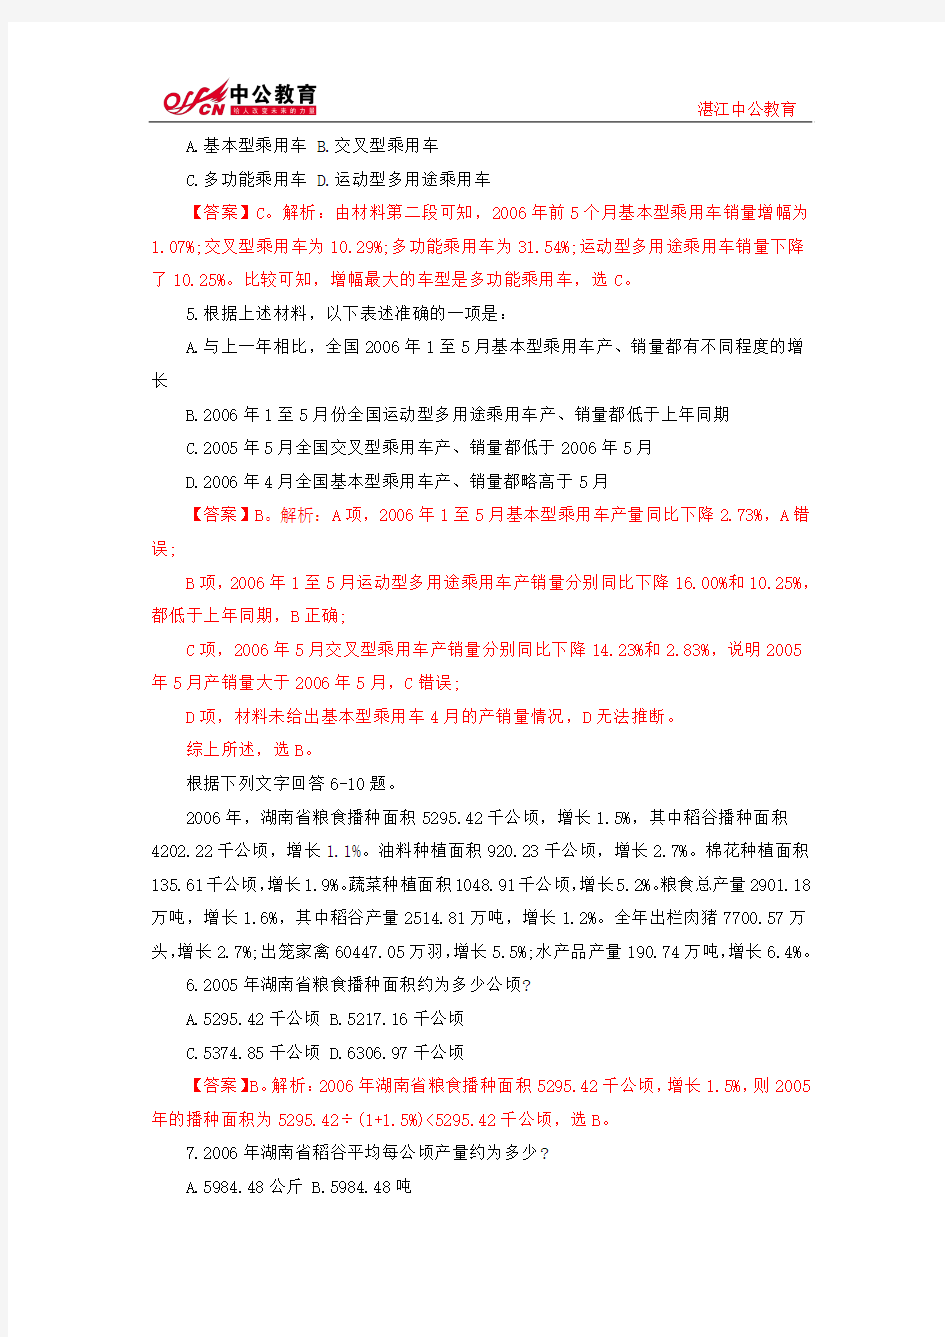 广东公务员考试行测题库：天天考串03月19日资料分析练习题及解析